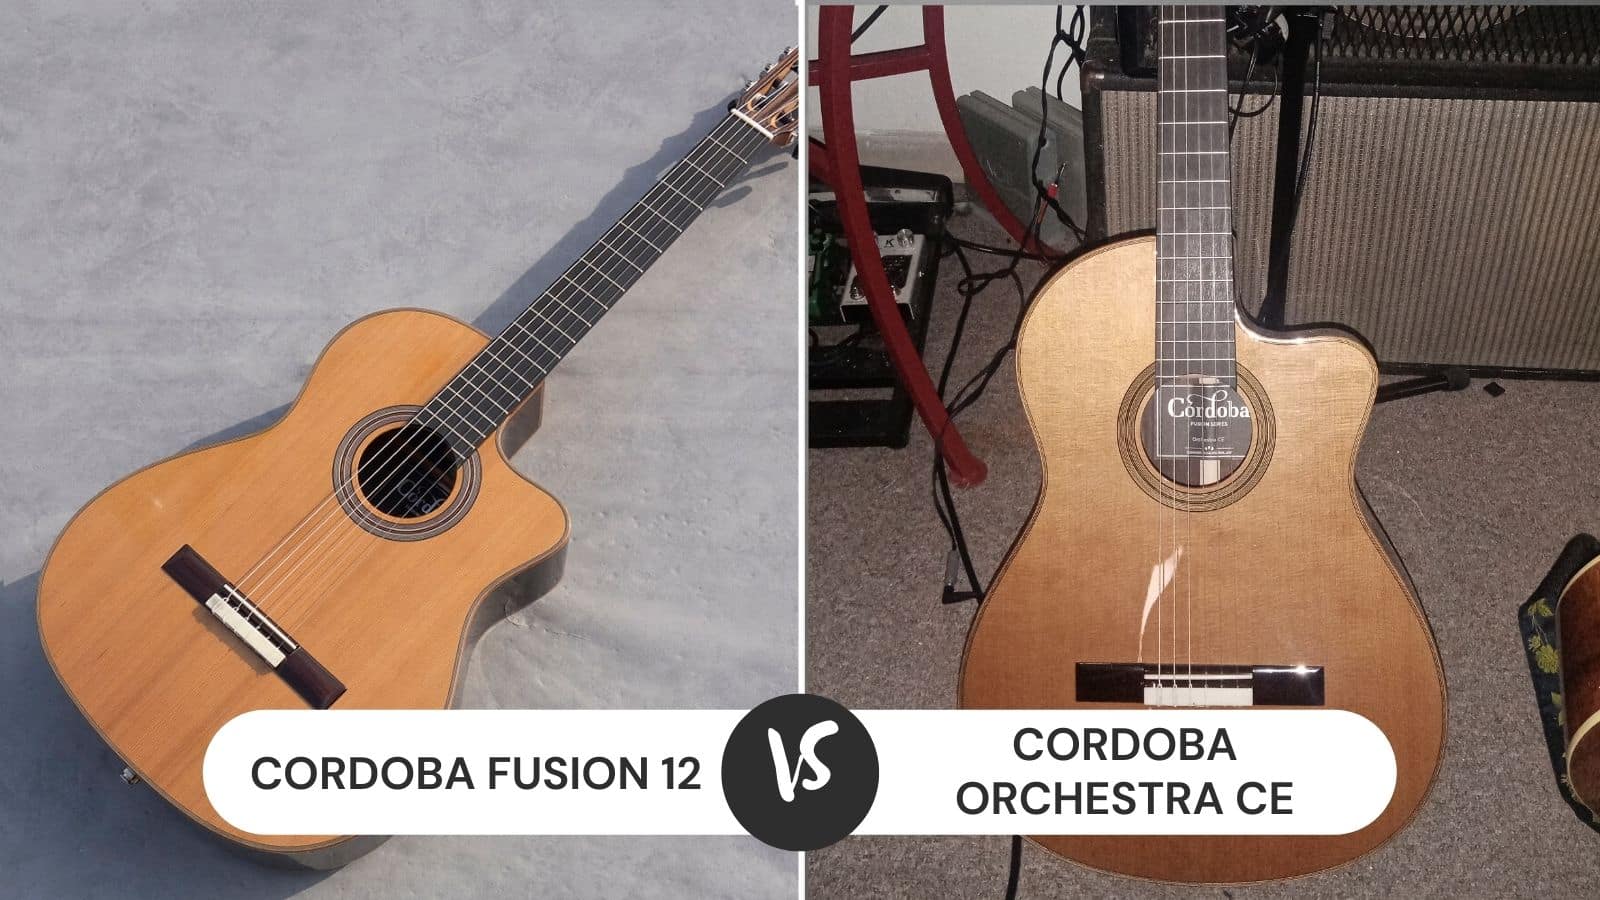 Cordoba Fusion 12 vs Orchestra CE